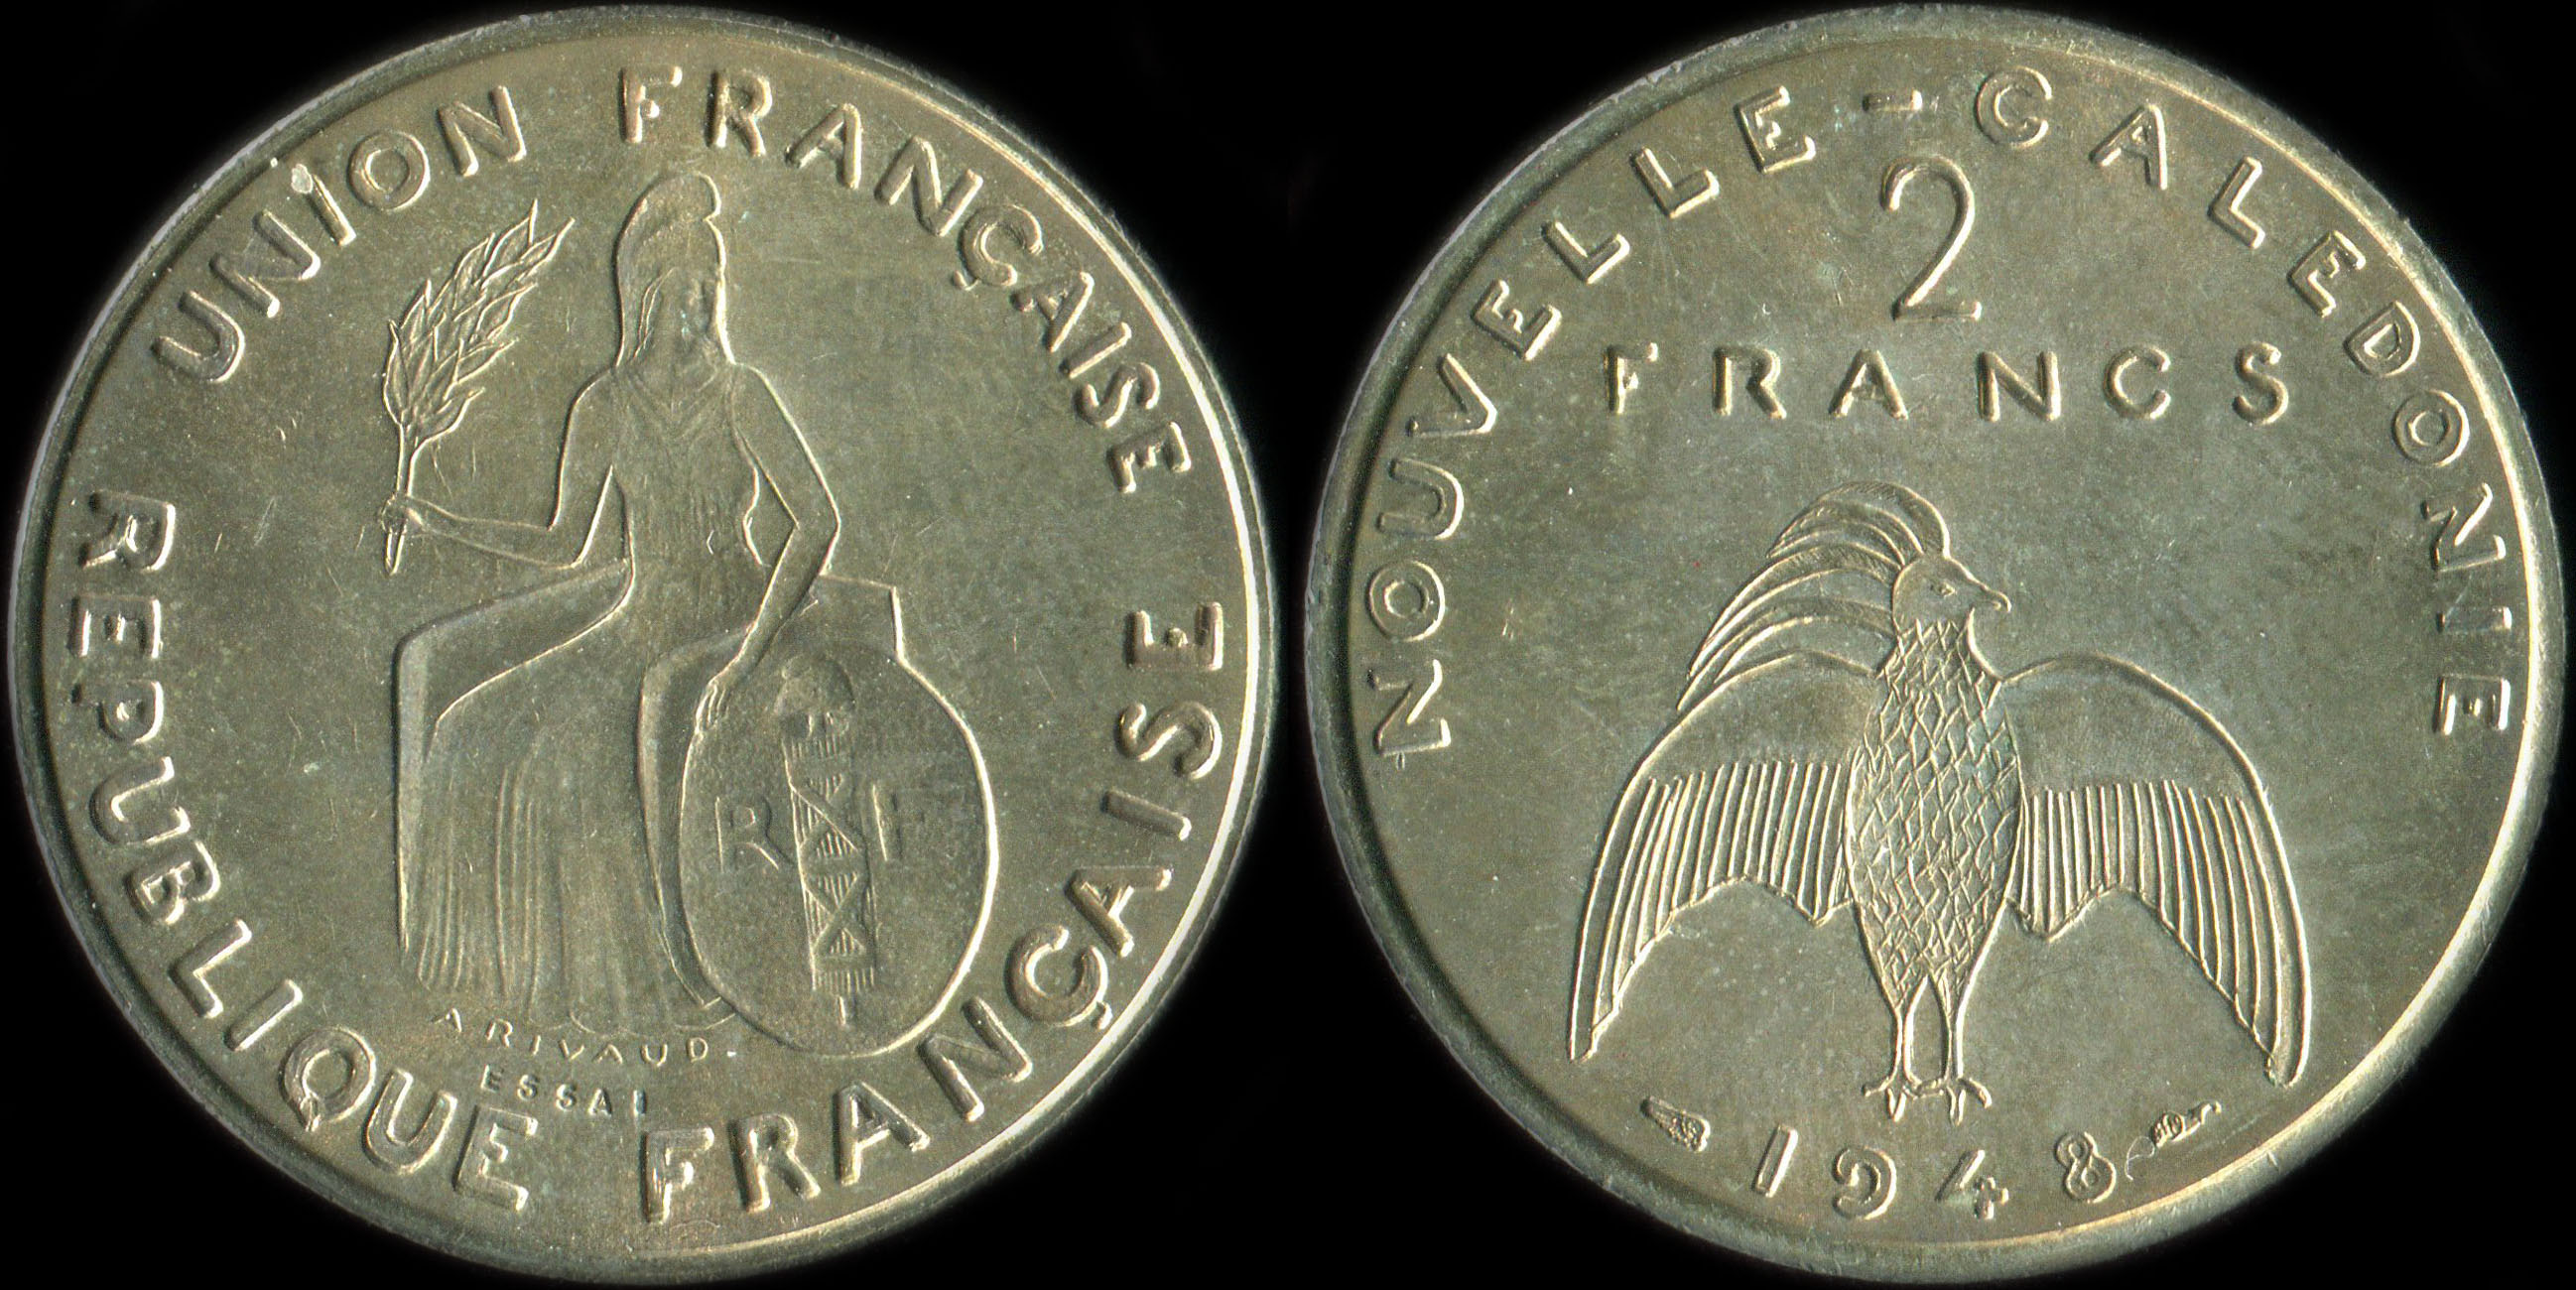 Pièce de 2 francs 1948 - Essai de André Rivaud (avec listel)